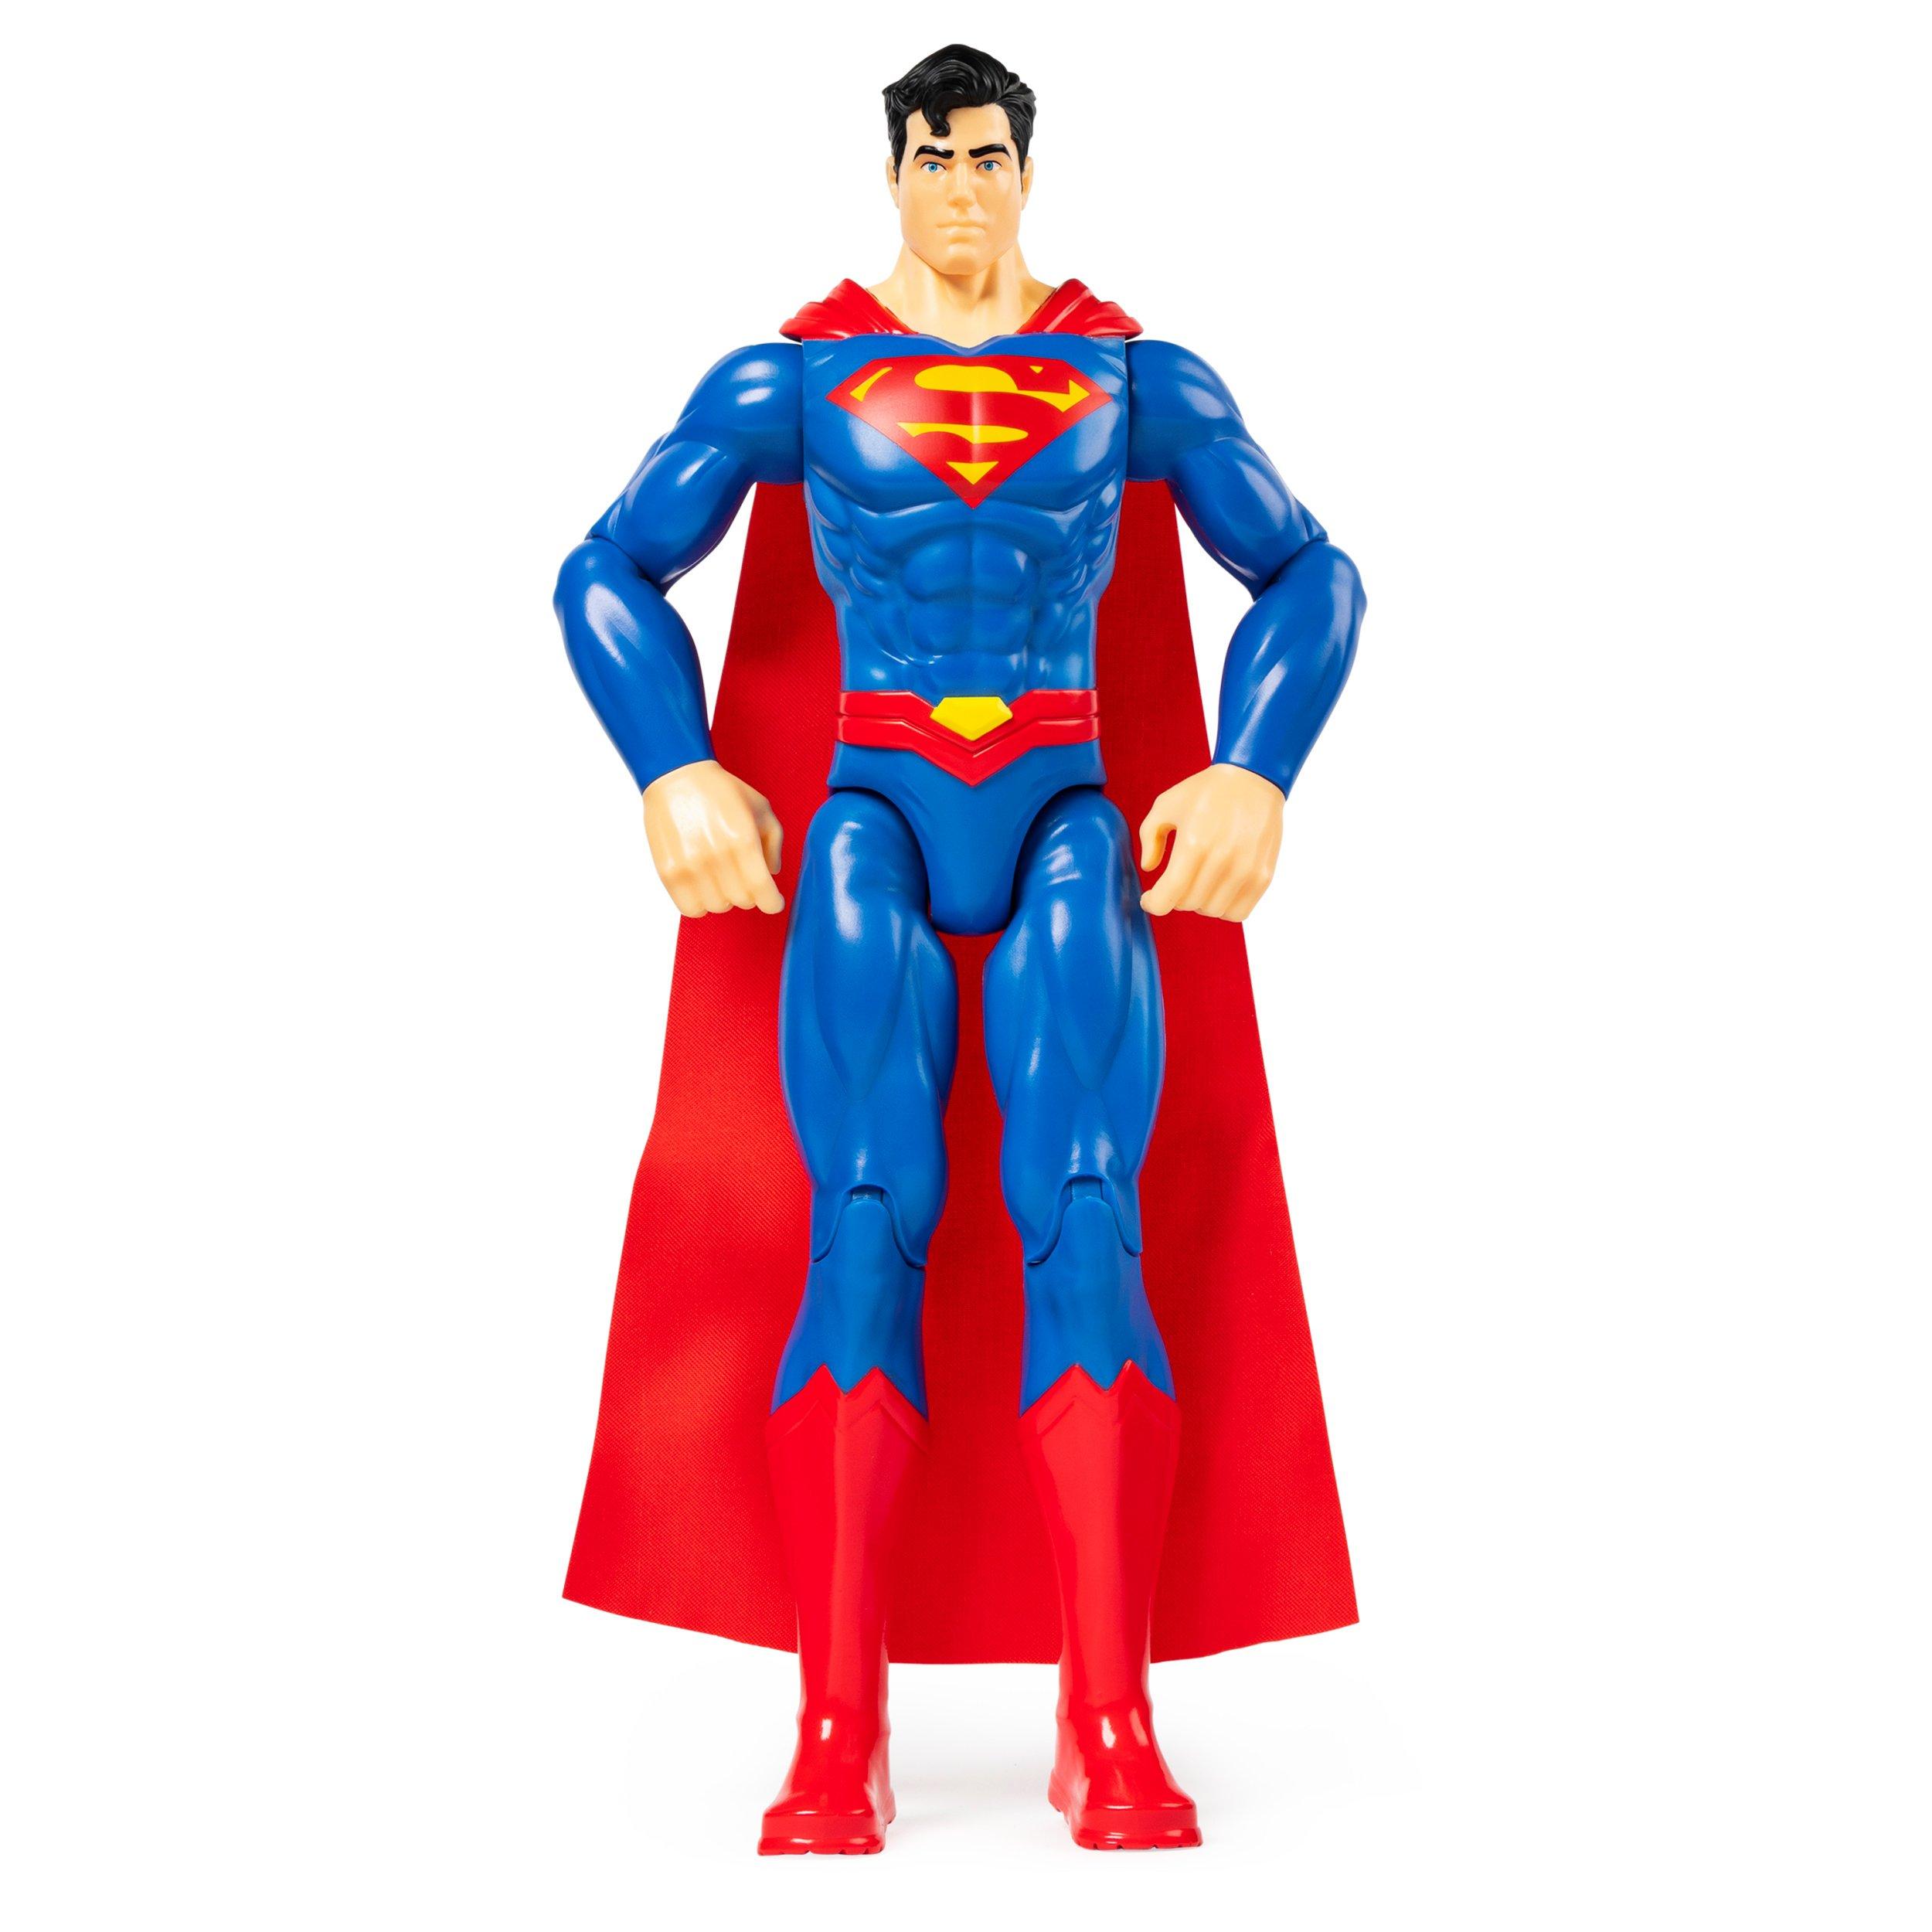 DC Comics Superman 12-in Action Figure | GameStop